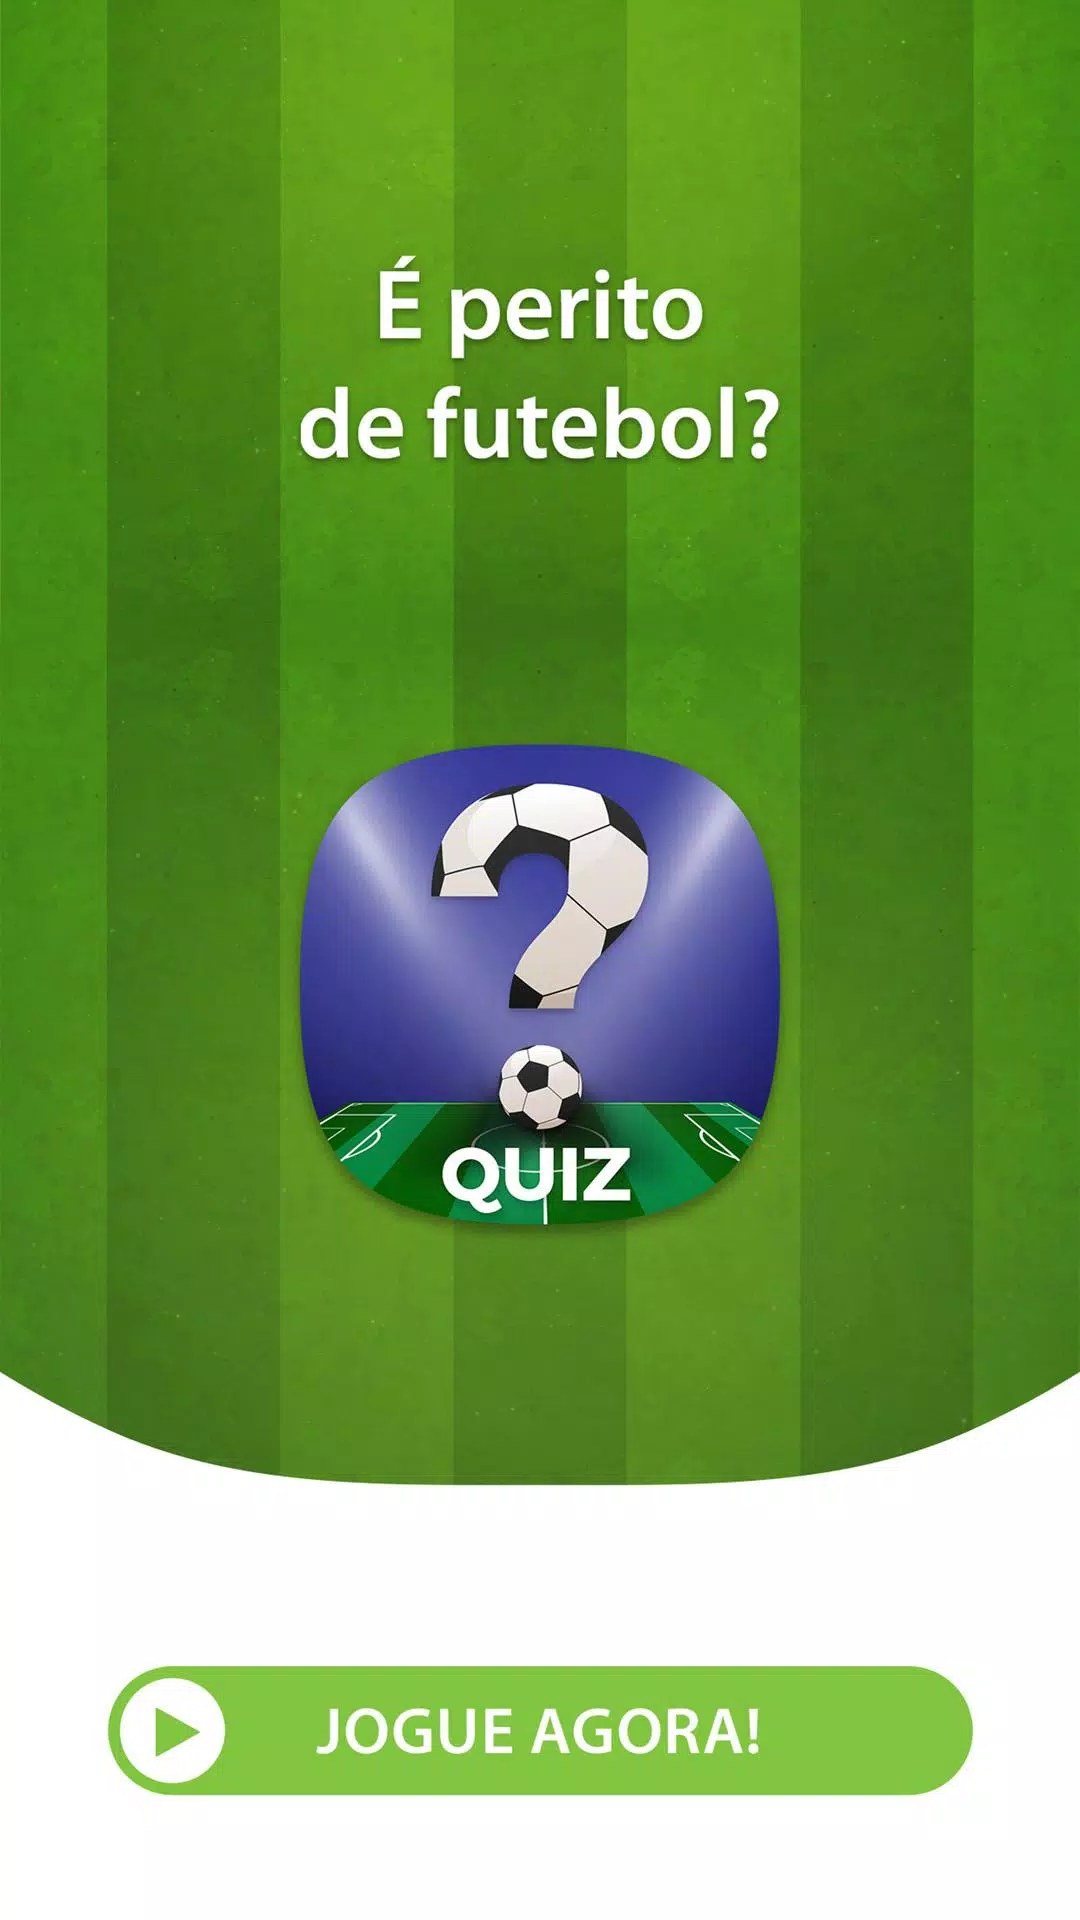 Quiz de Futebol Português - Adivinhe o Jogador安卓版游戏APK下载